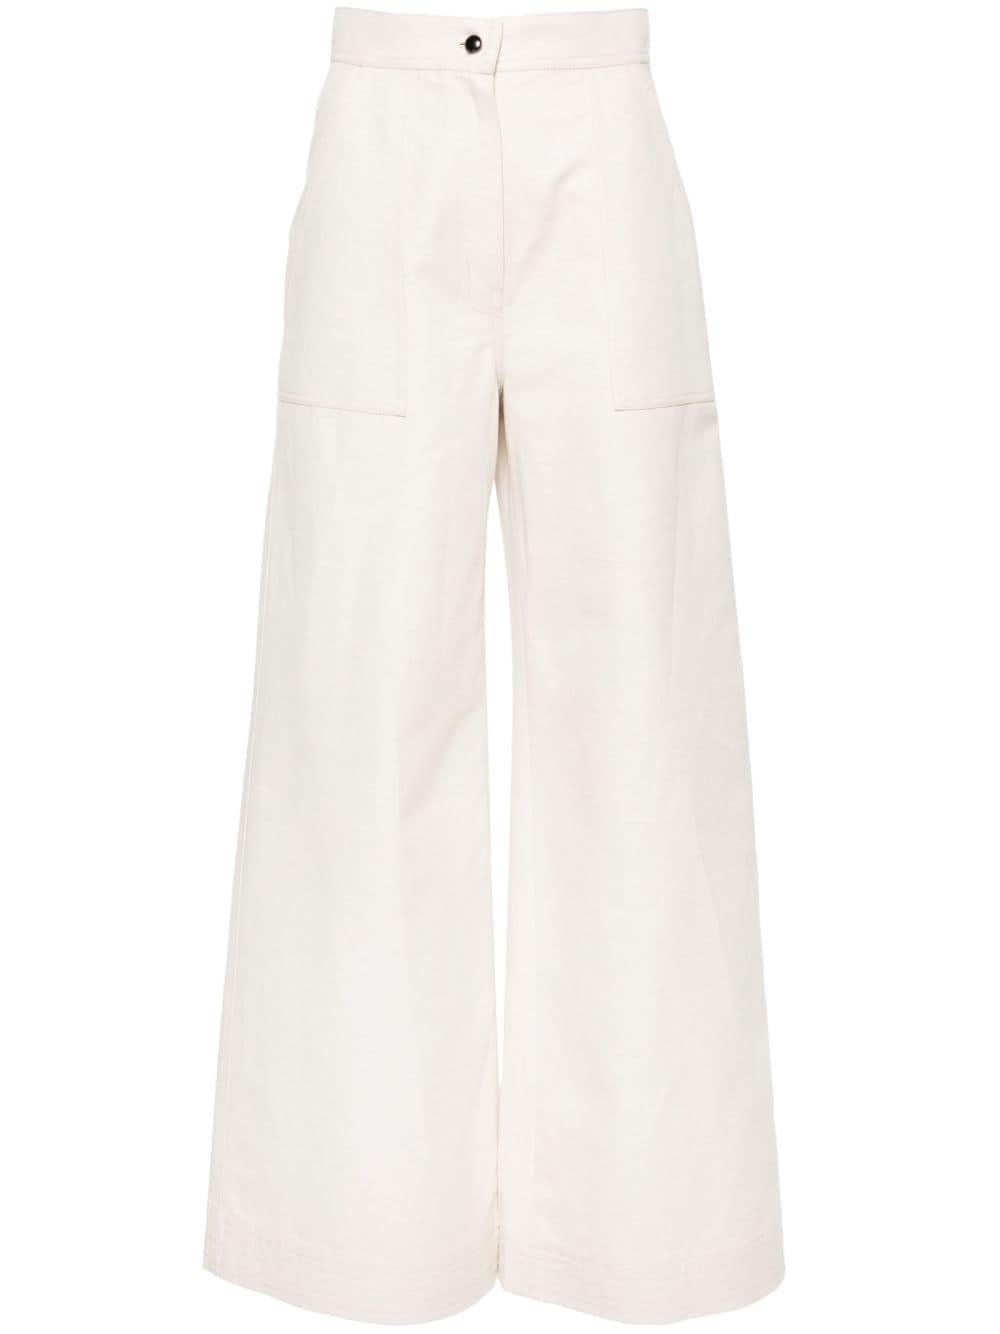 Cotton-linen blend trousers